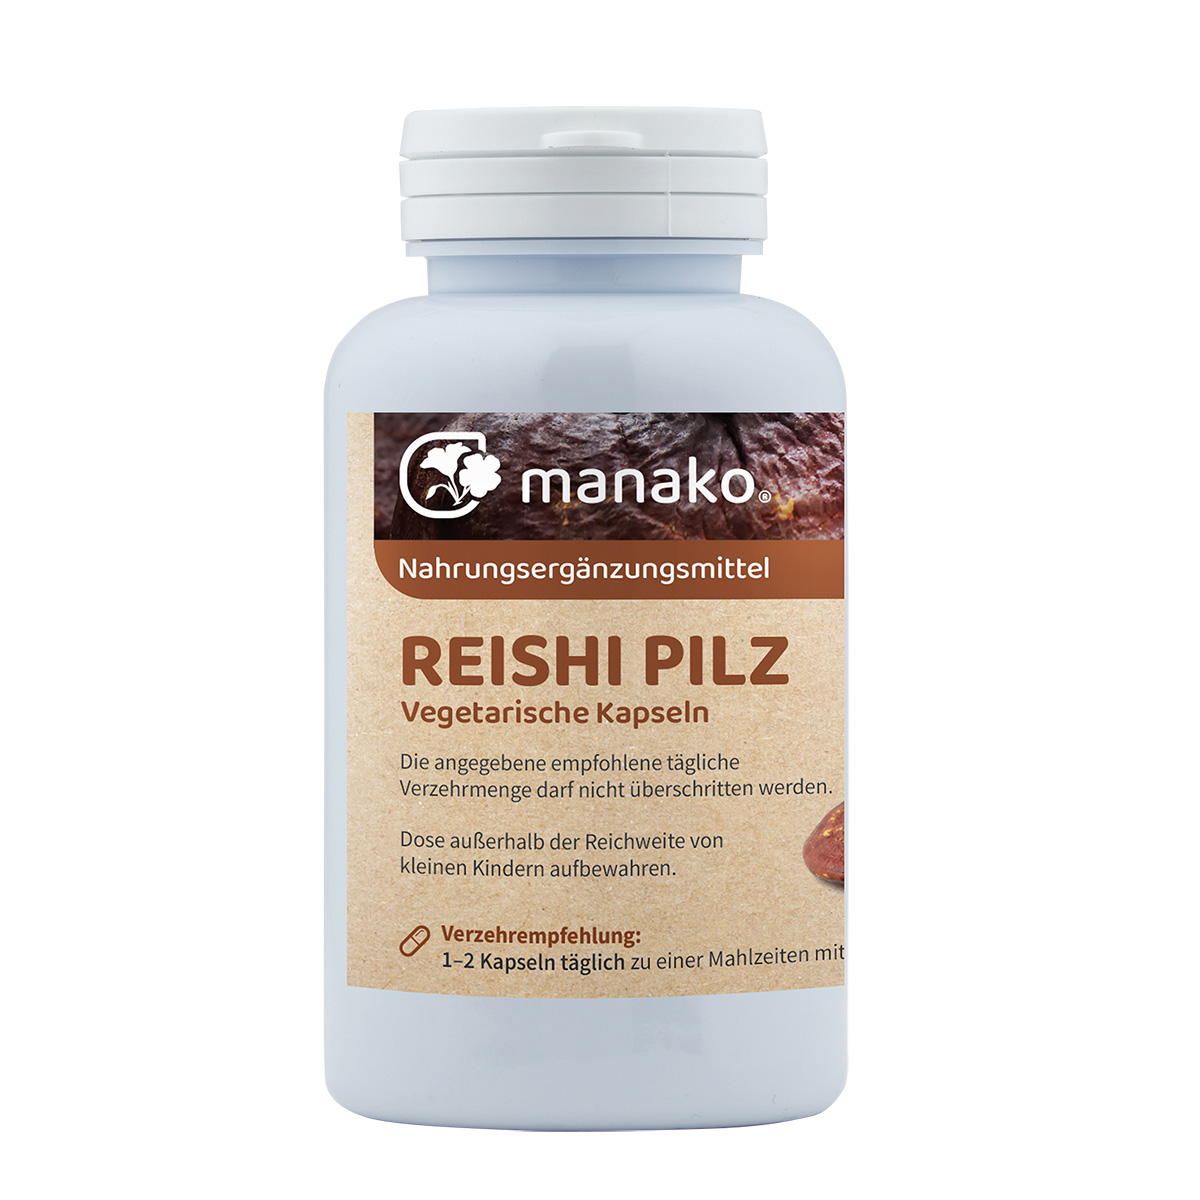 manako Reishi Pilz Kapseln, 120 Stück (vegetarische Kapseln) a 400 mg, Dose 60 g